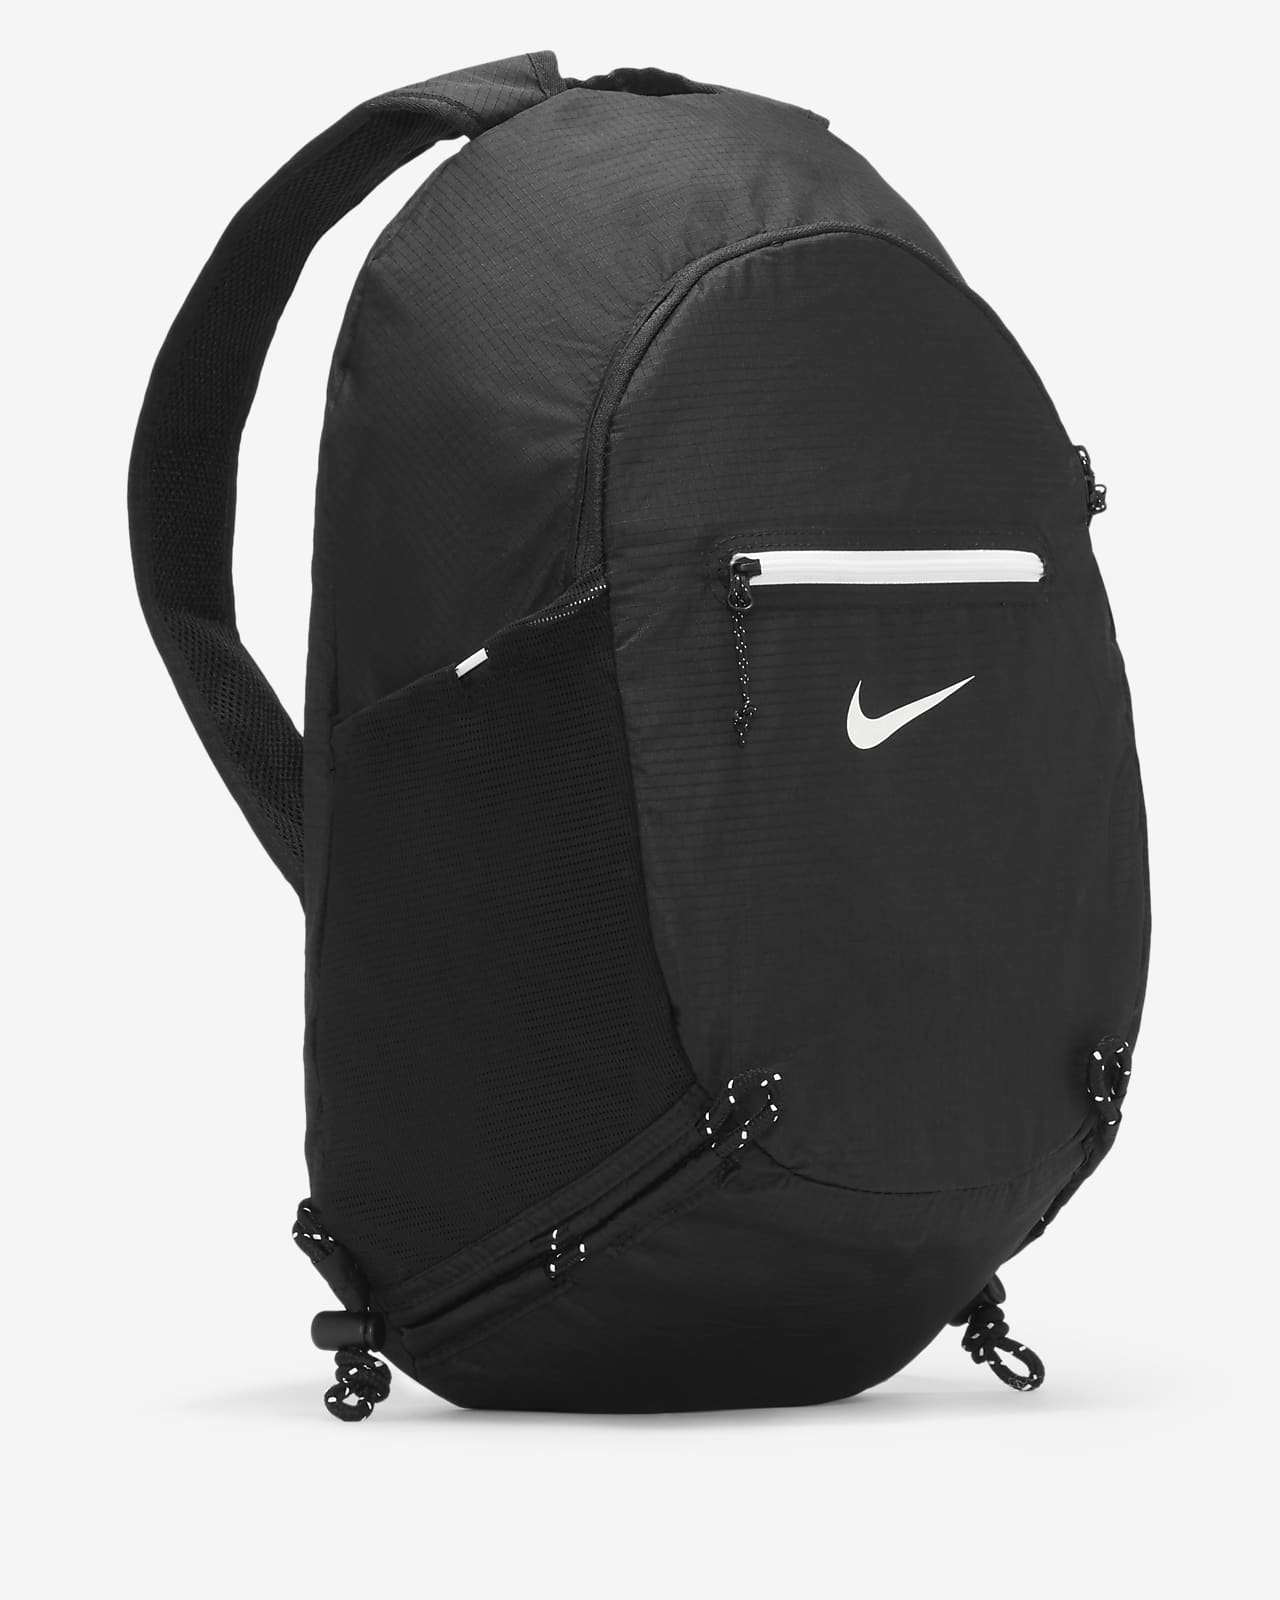 Stash Backpack (17L).